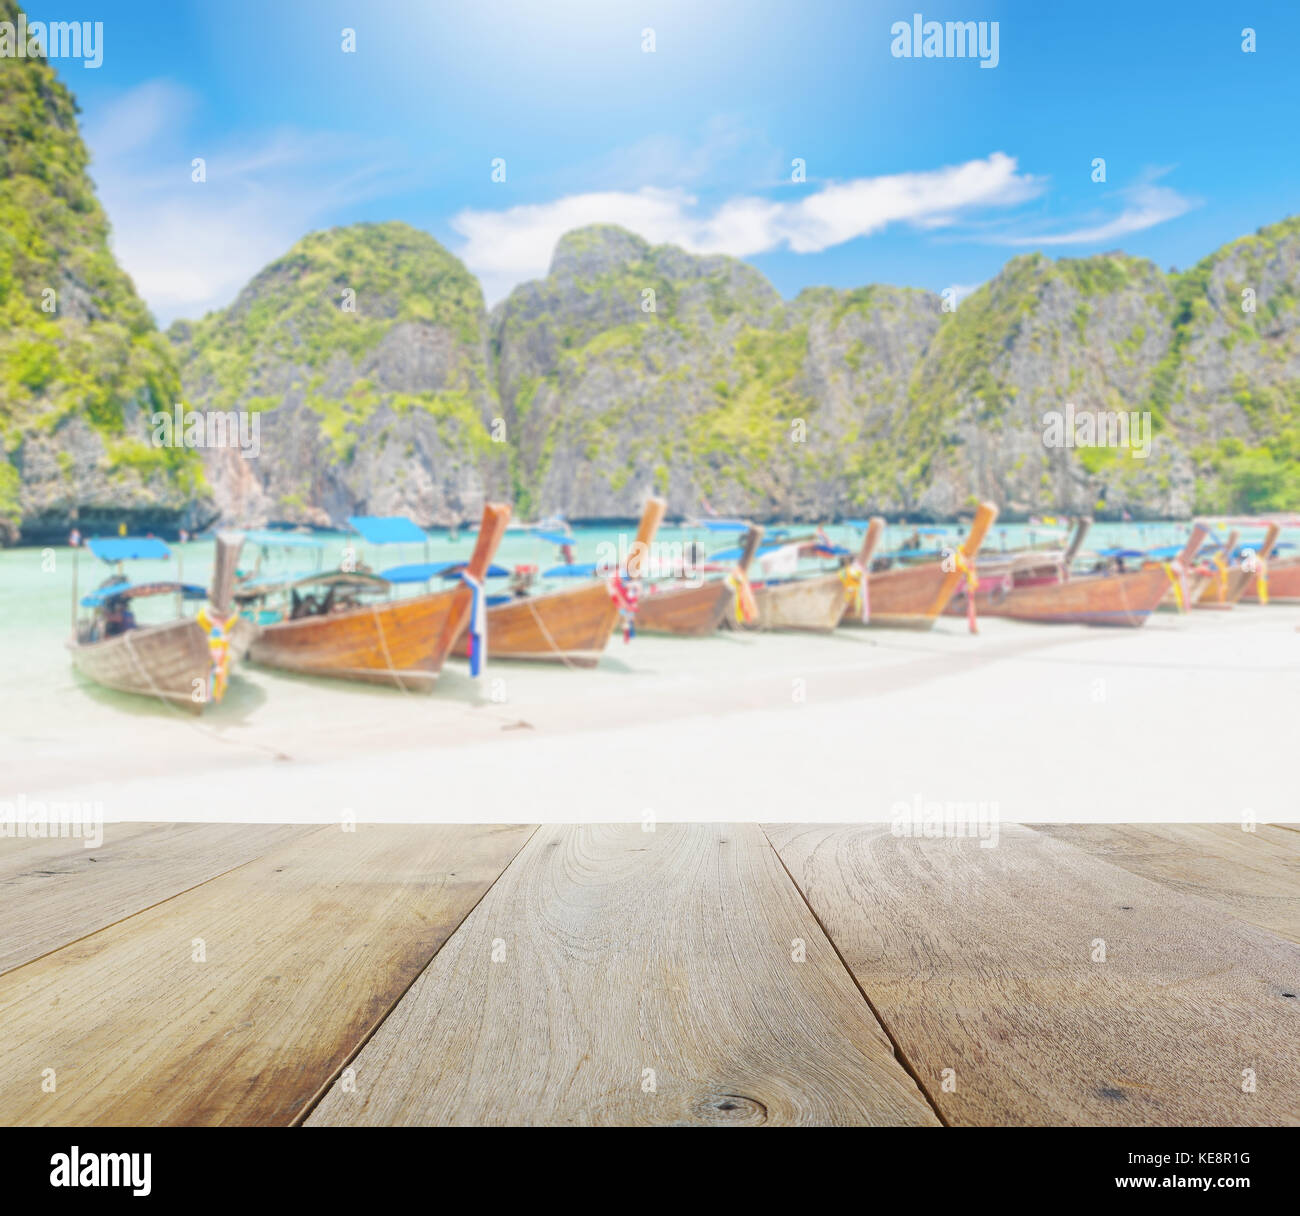 Una plataforma de madera con larga cola borrosa barco sobre la playa de arena blanca en la bahía de maya, la isla de Phi Phi leh, Krabi-Tailandia Foto de stock